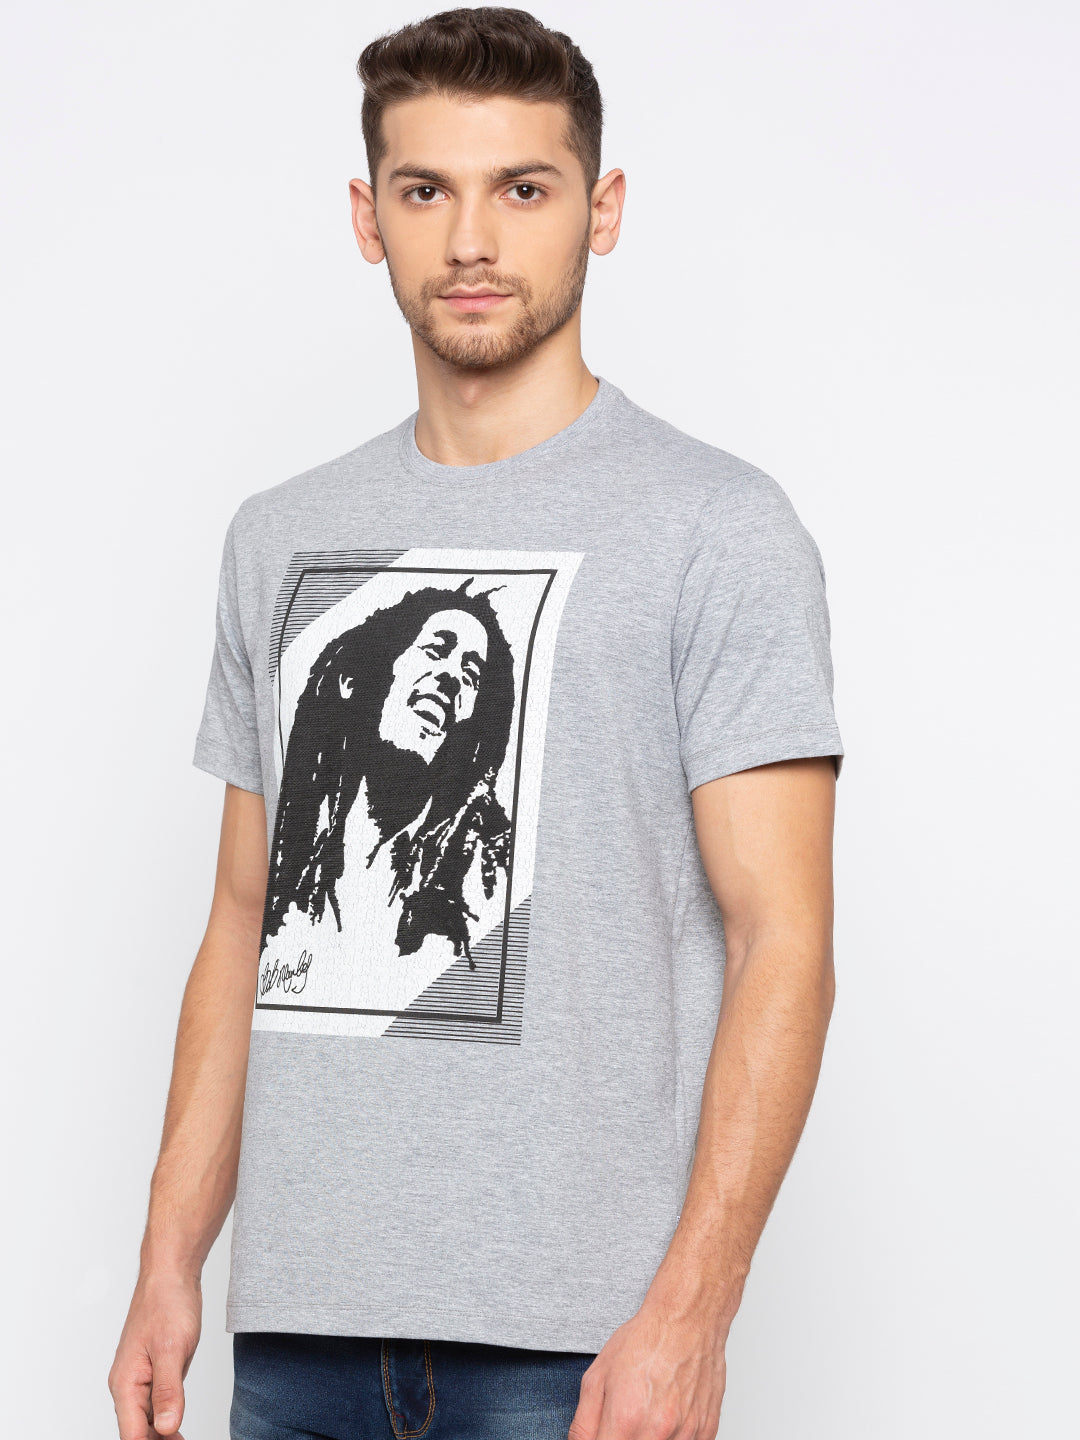 Bob Marley Printed T-Shirt